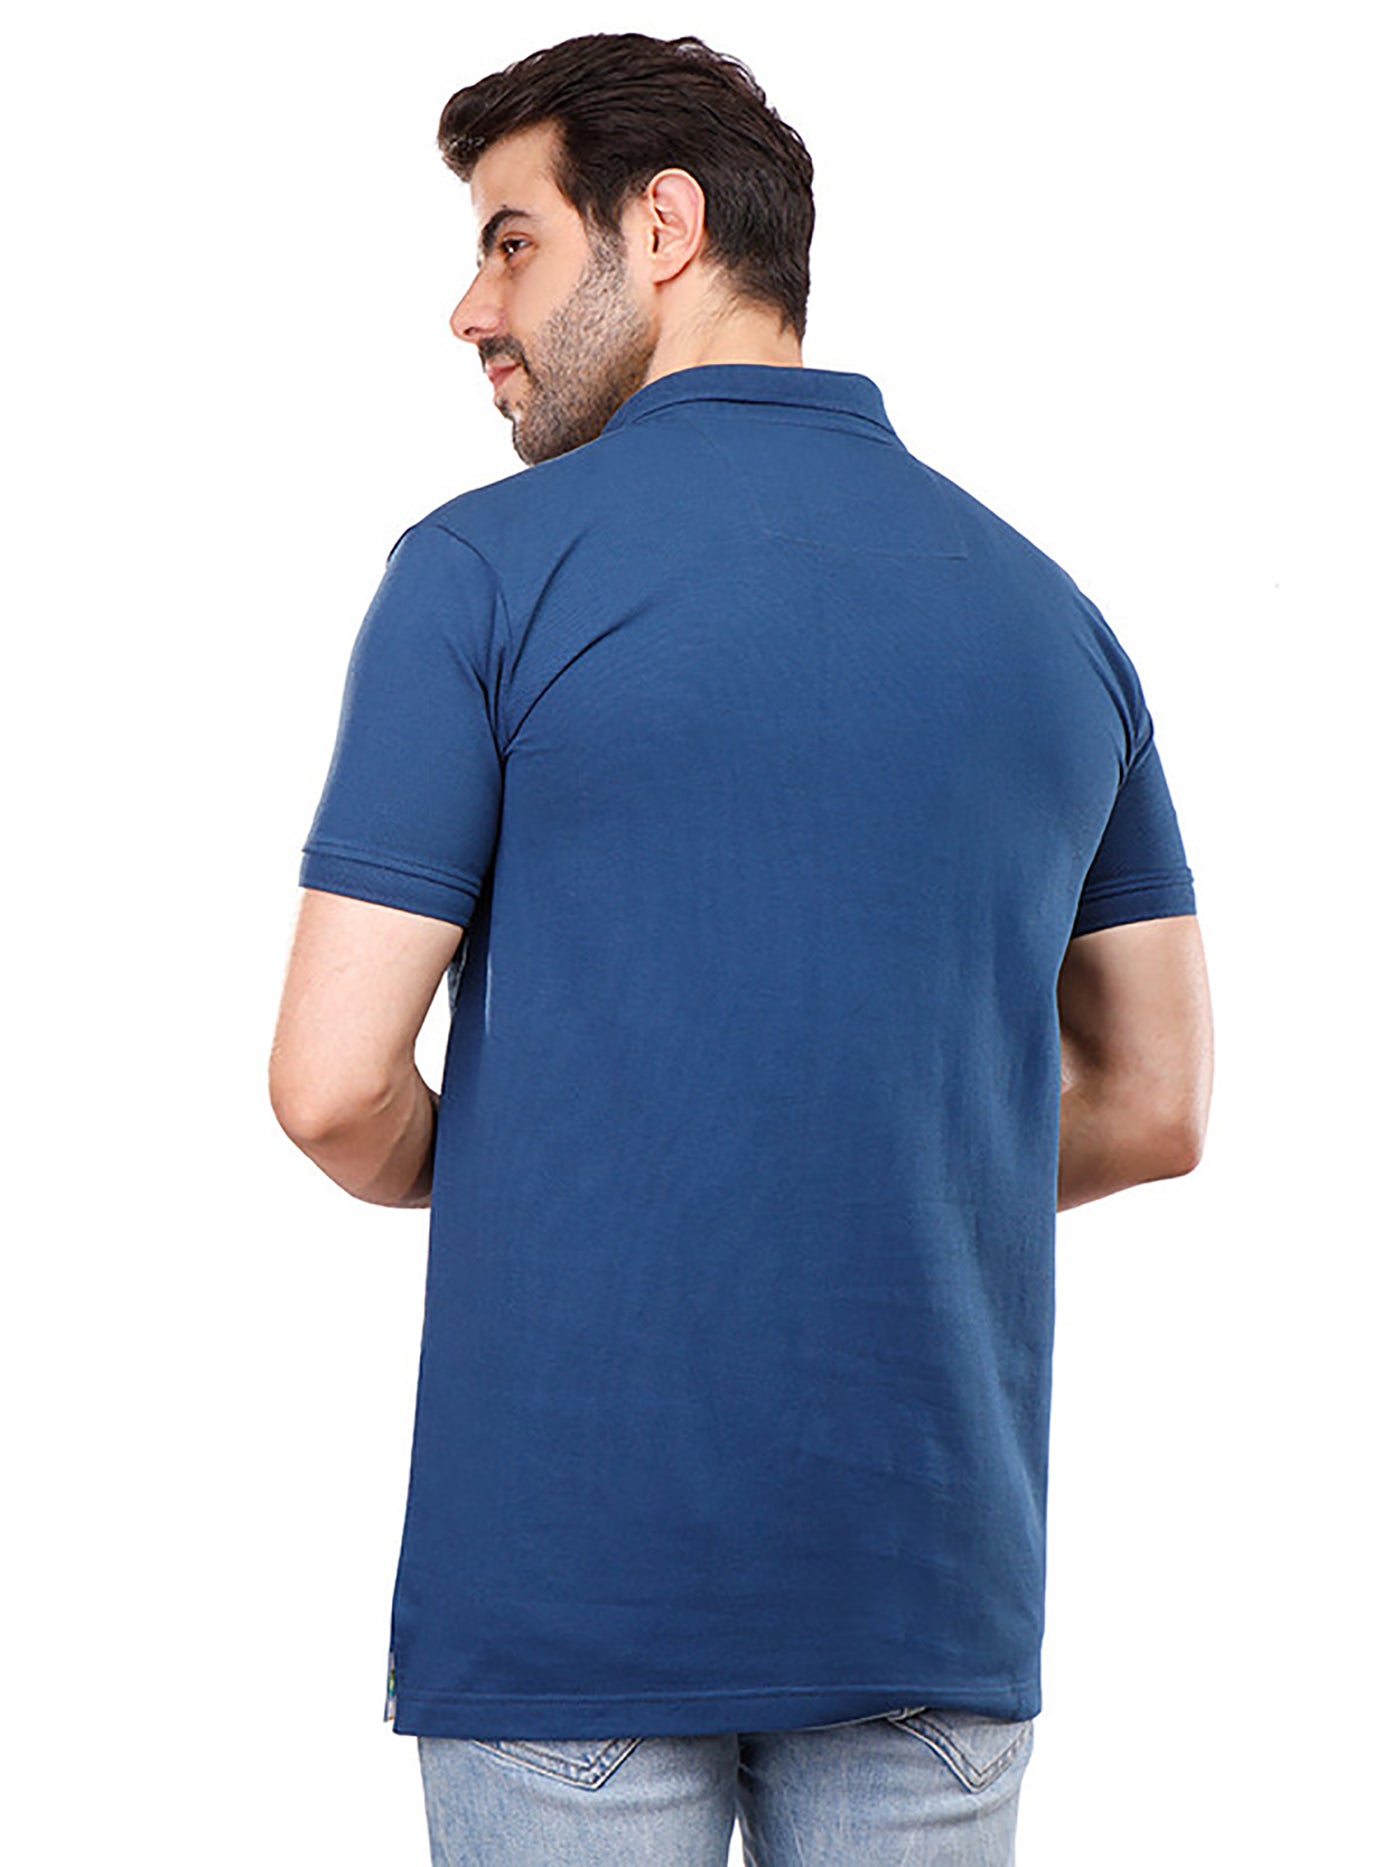 Polo Shirt - Regular Fit - Slip-On